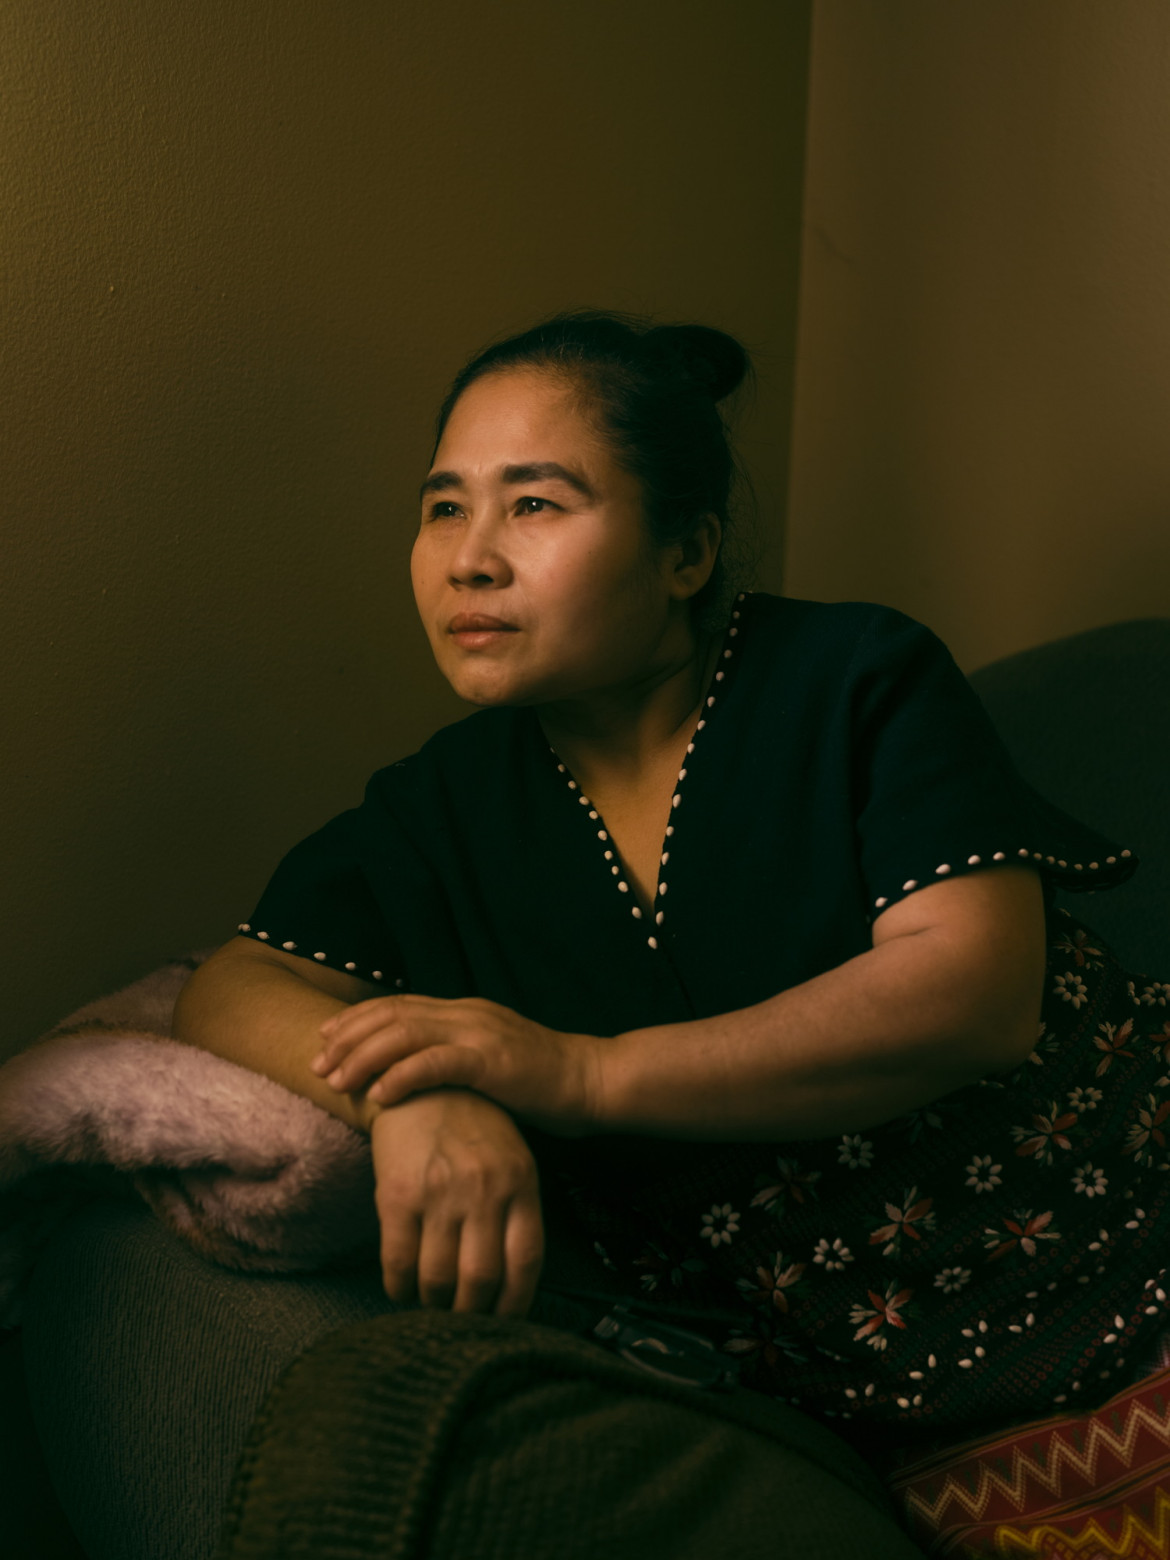 fot. Ismail Ferdous, z cyklu "The People who Feed the United States", nagroda w okręgu północnoamerykańskim




<br> <br>

Aye Sway, członkini grupy etnicznej Karenów, która doświadczyła prześladowań ze strony rządu Myanmaru, sfotografowana w domu w Omaha, Nebraska, USA, 2 marca 2021 r. Przed przeprowadzką do USA w 2018 r. mieszkała w obozie dla uchodźców w Tajlandii. W czasie wybuchu epidemii COVID-19 pracowała w zakładzie przetwórstwa kurczaków w Lincoln w stanie Nebraska, ale mówi, że bała się iść do pracy, ponieważ tak wielu jej znajomych ciężko zachorowało. 

<br> <br> 

W skali kraju imigranci w USA stanowią 37% siły roboczej w przemyśle mięsnym. Podczas pandemii COVID-19 zakłady mięsne pozostały otwarte, ponieważ uznano je za infrastrukturę krytyczną. Koronawirus szybko rozprzestrzeniał się w branży, w której pracownicy pracowali blisko siebie. Badanie przeprowadzone przez amerykańską organizację Environmental Working Group wykazało, że w hrabstwach, w których istniały zakłady mięsne lub w ich pobliżu, odnotowano dwukrotnie wyższy od średniej krajowej odsetek zakażeń wirusem COVID-19.